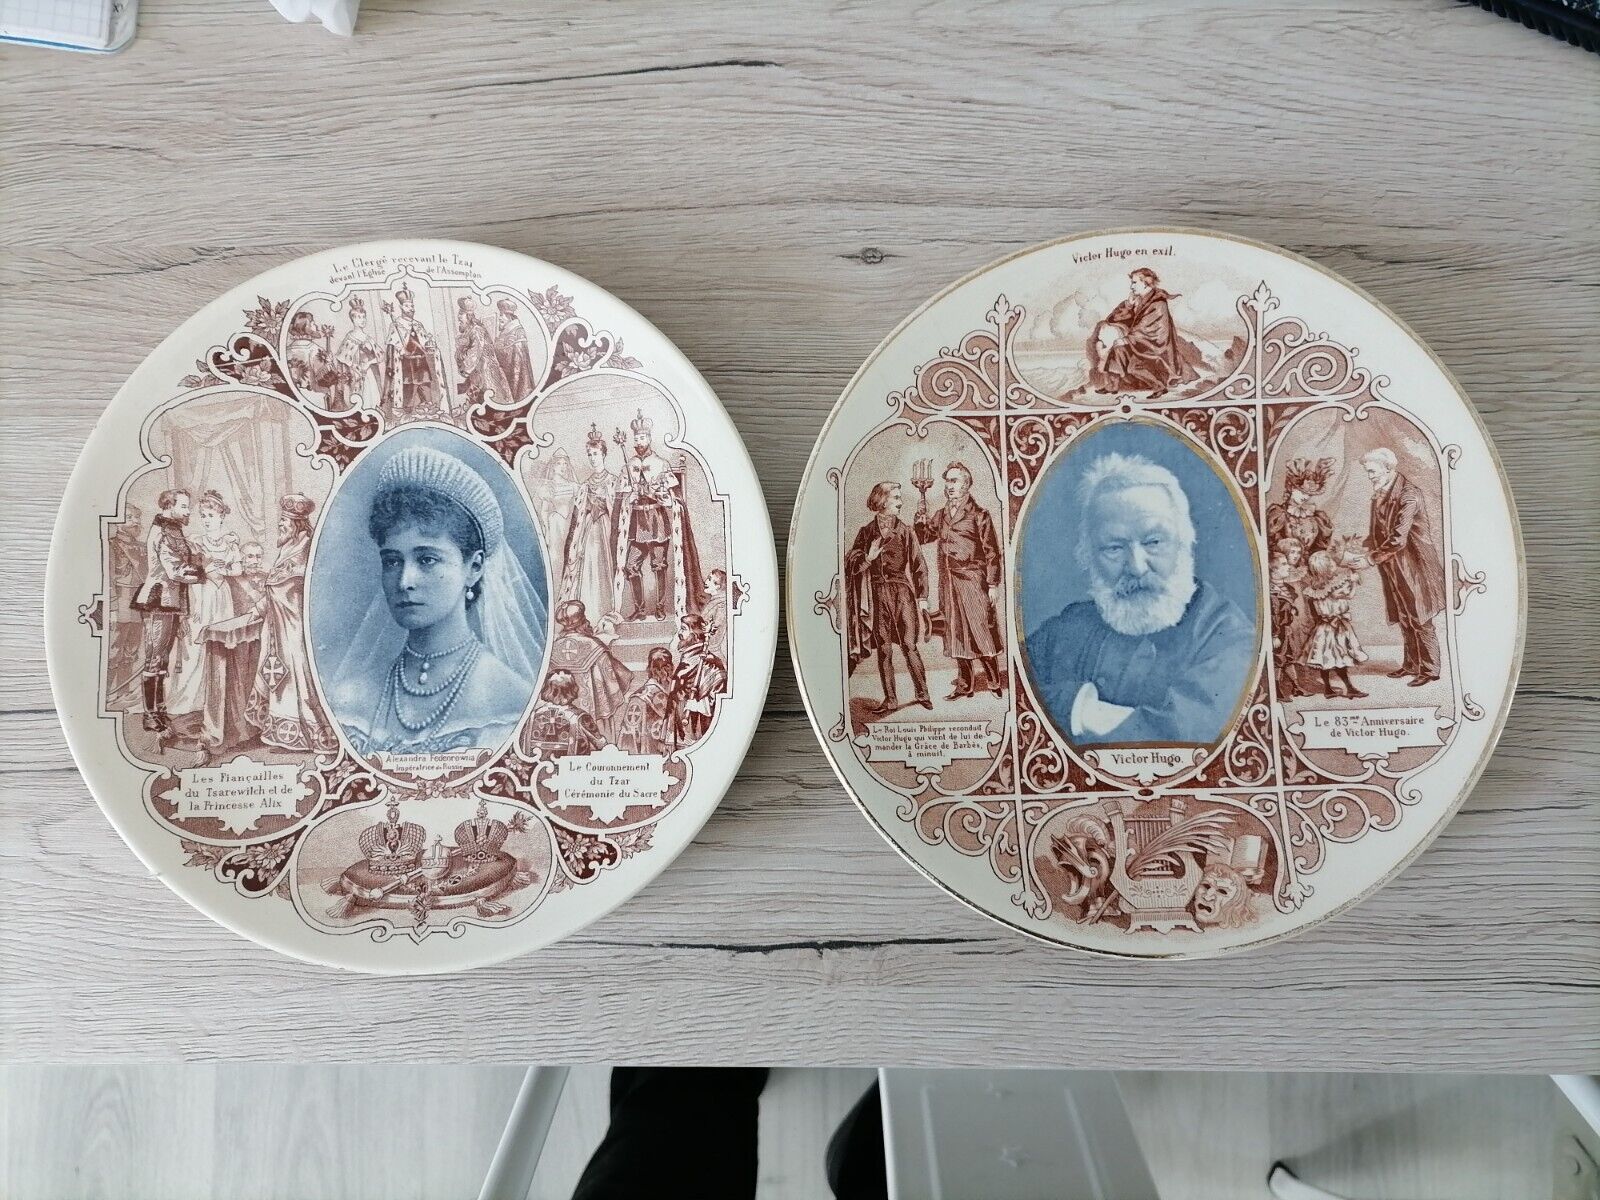 Russian Tsarina ALEXANDRA FEODOROVNA + French Writer VICTOR HUGO - Plates 1896